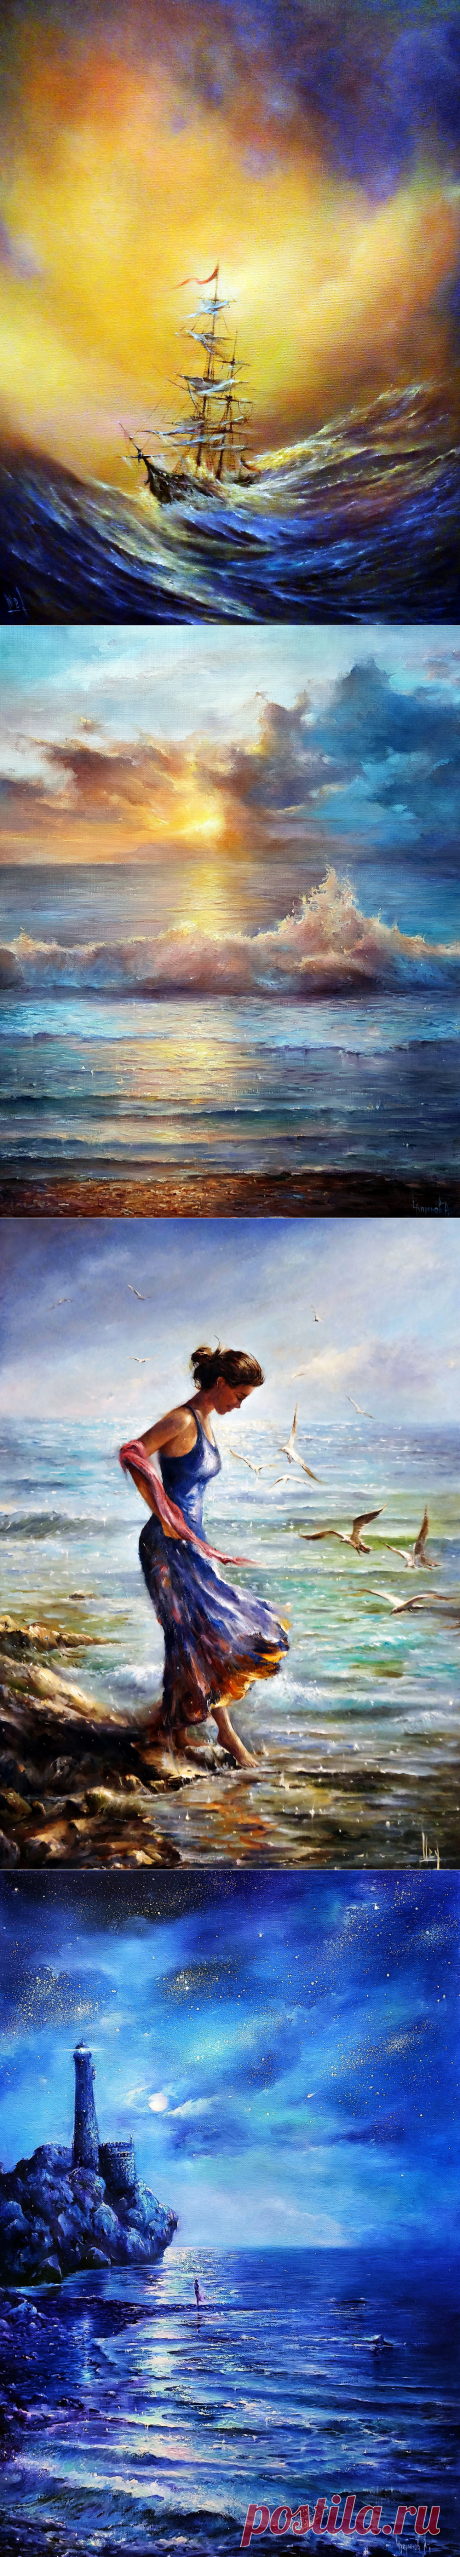 На берег морской набегает волна, мне сказочный мир открывает она... Художник Алексей Чупринов.